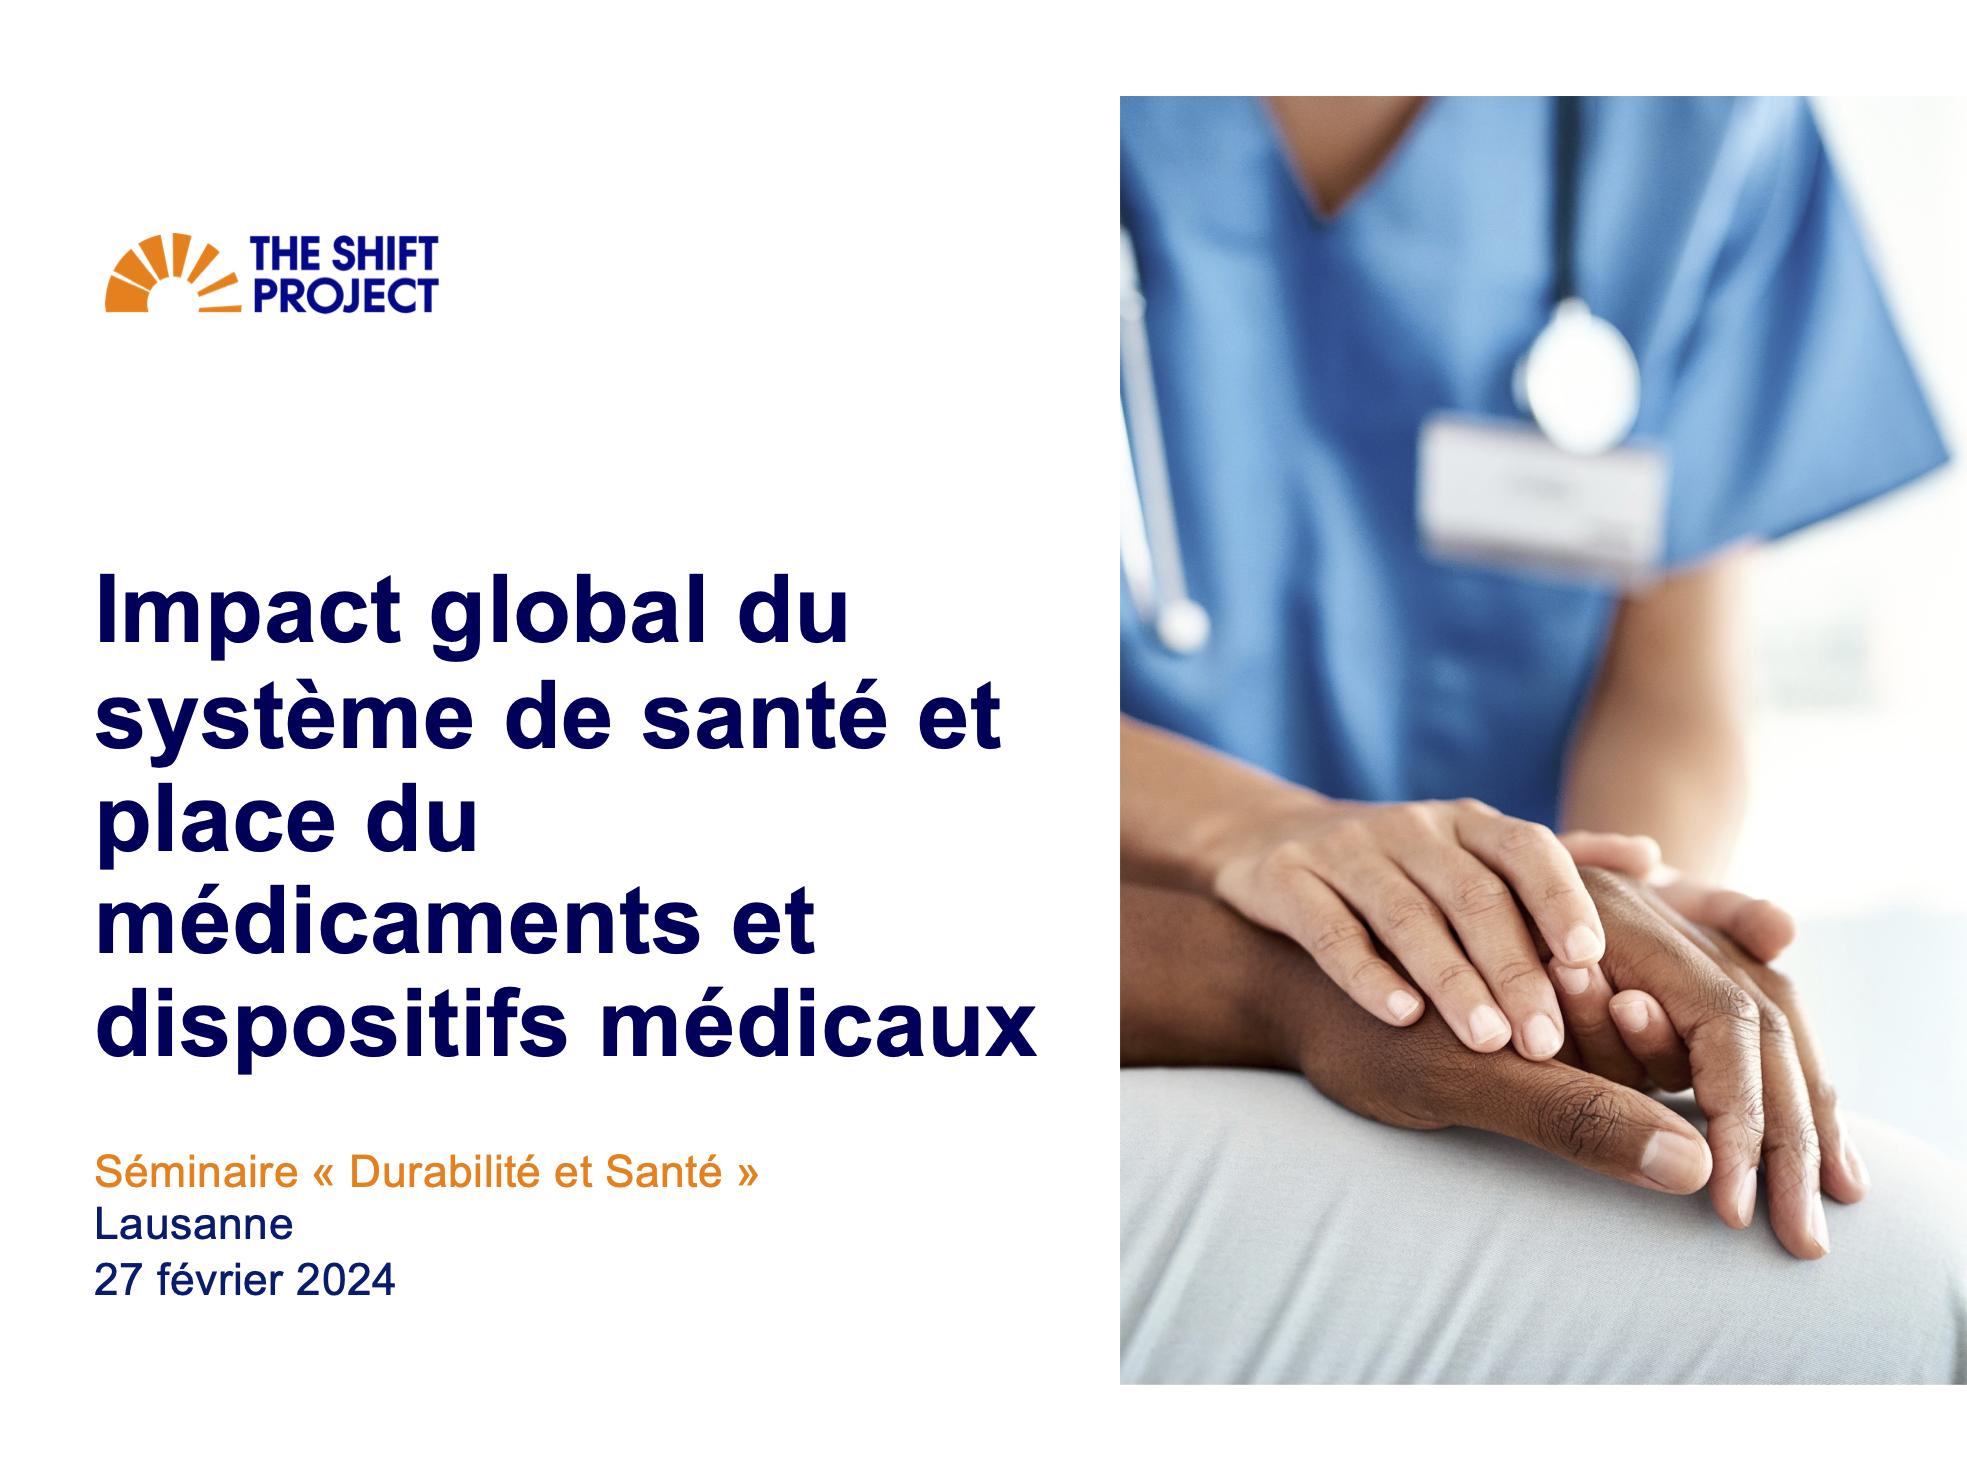 Impact global du système de santé et place du médicaments et dispositifs médicaux - The Shift Project (France)